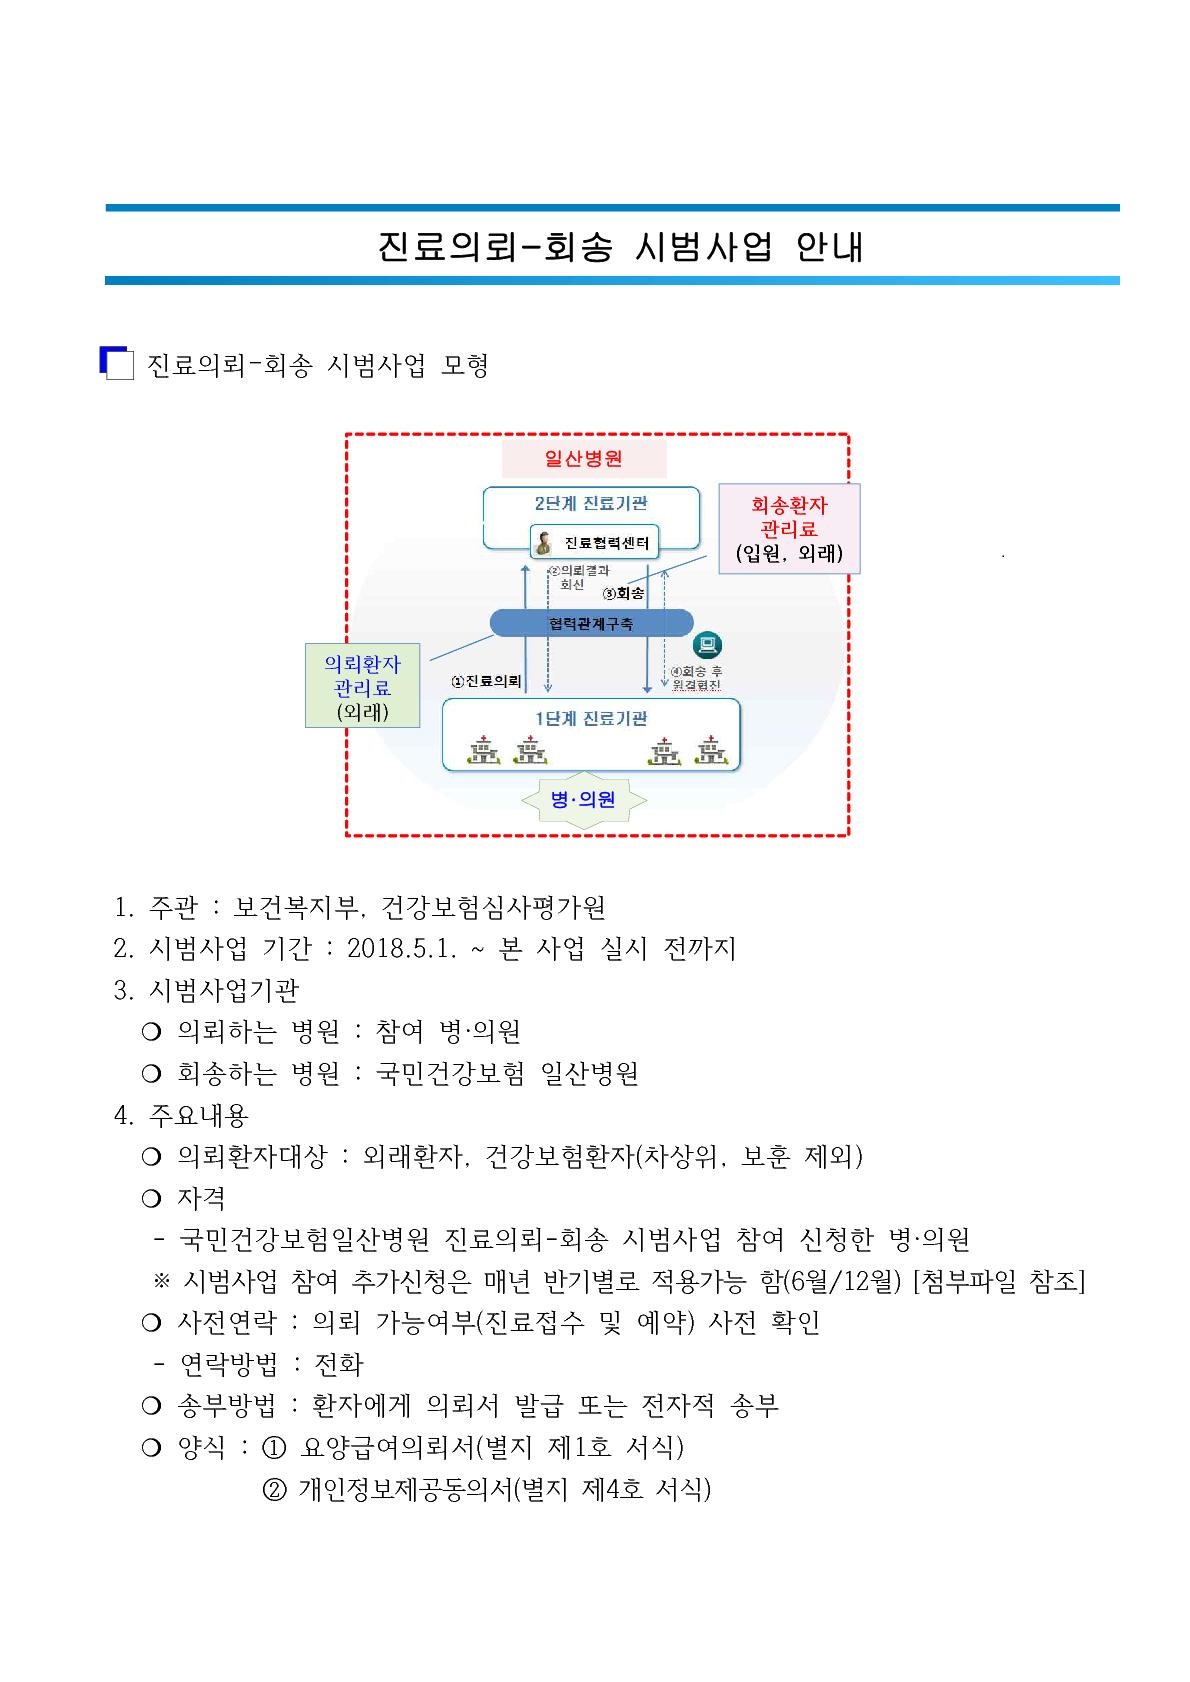 진료의뢰-회송 시범사업 참여 안내(2024)